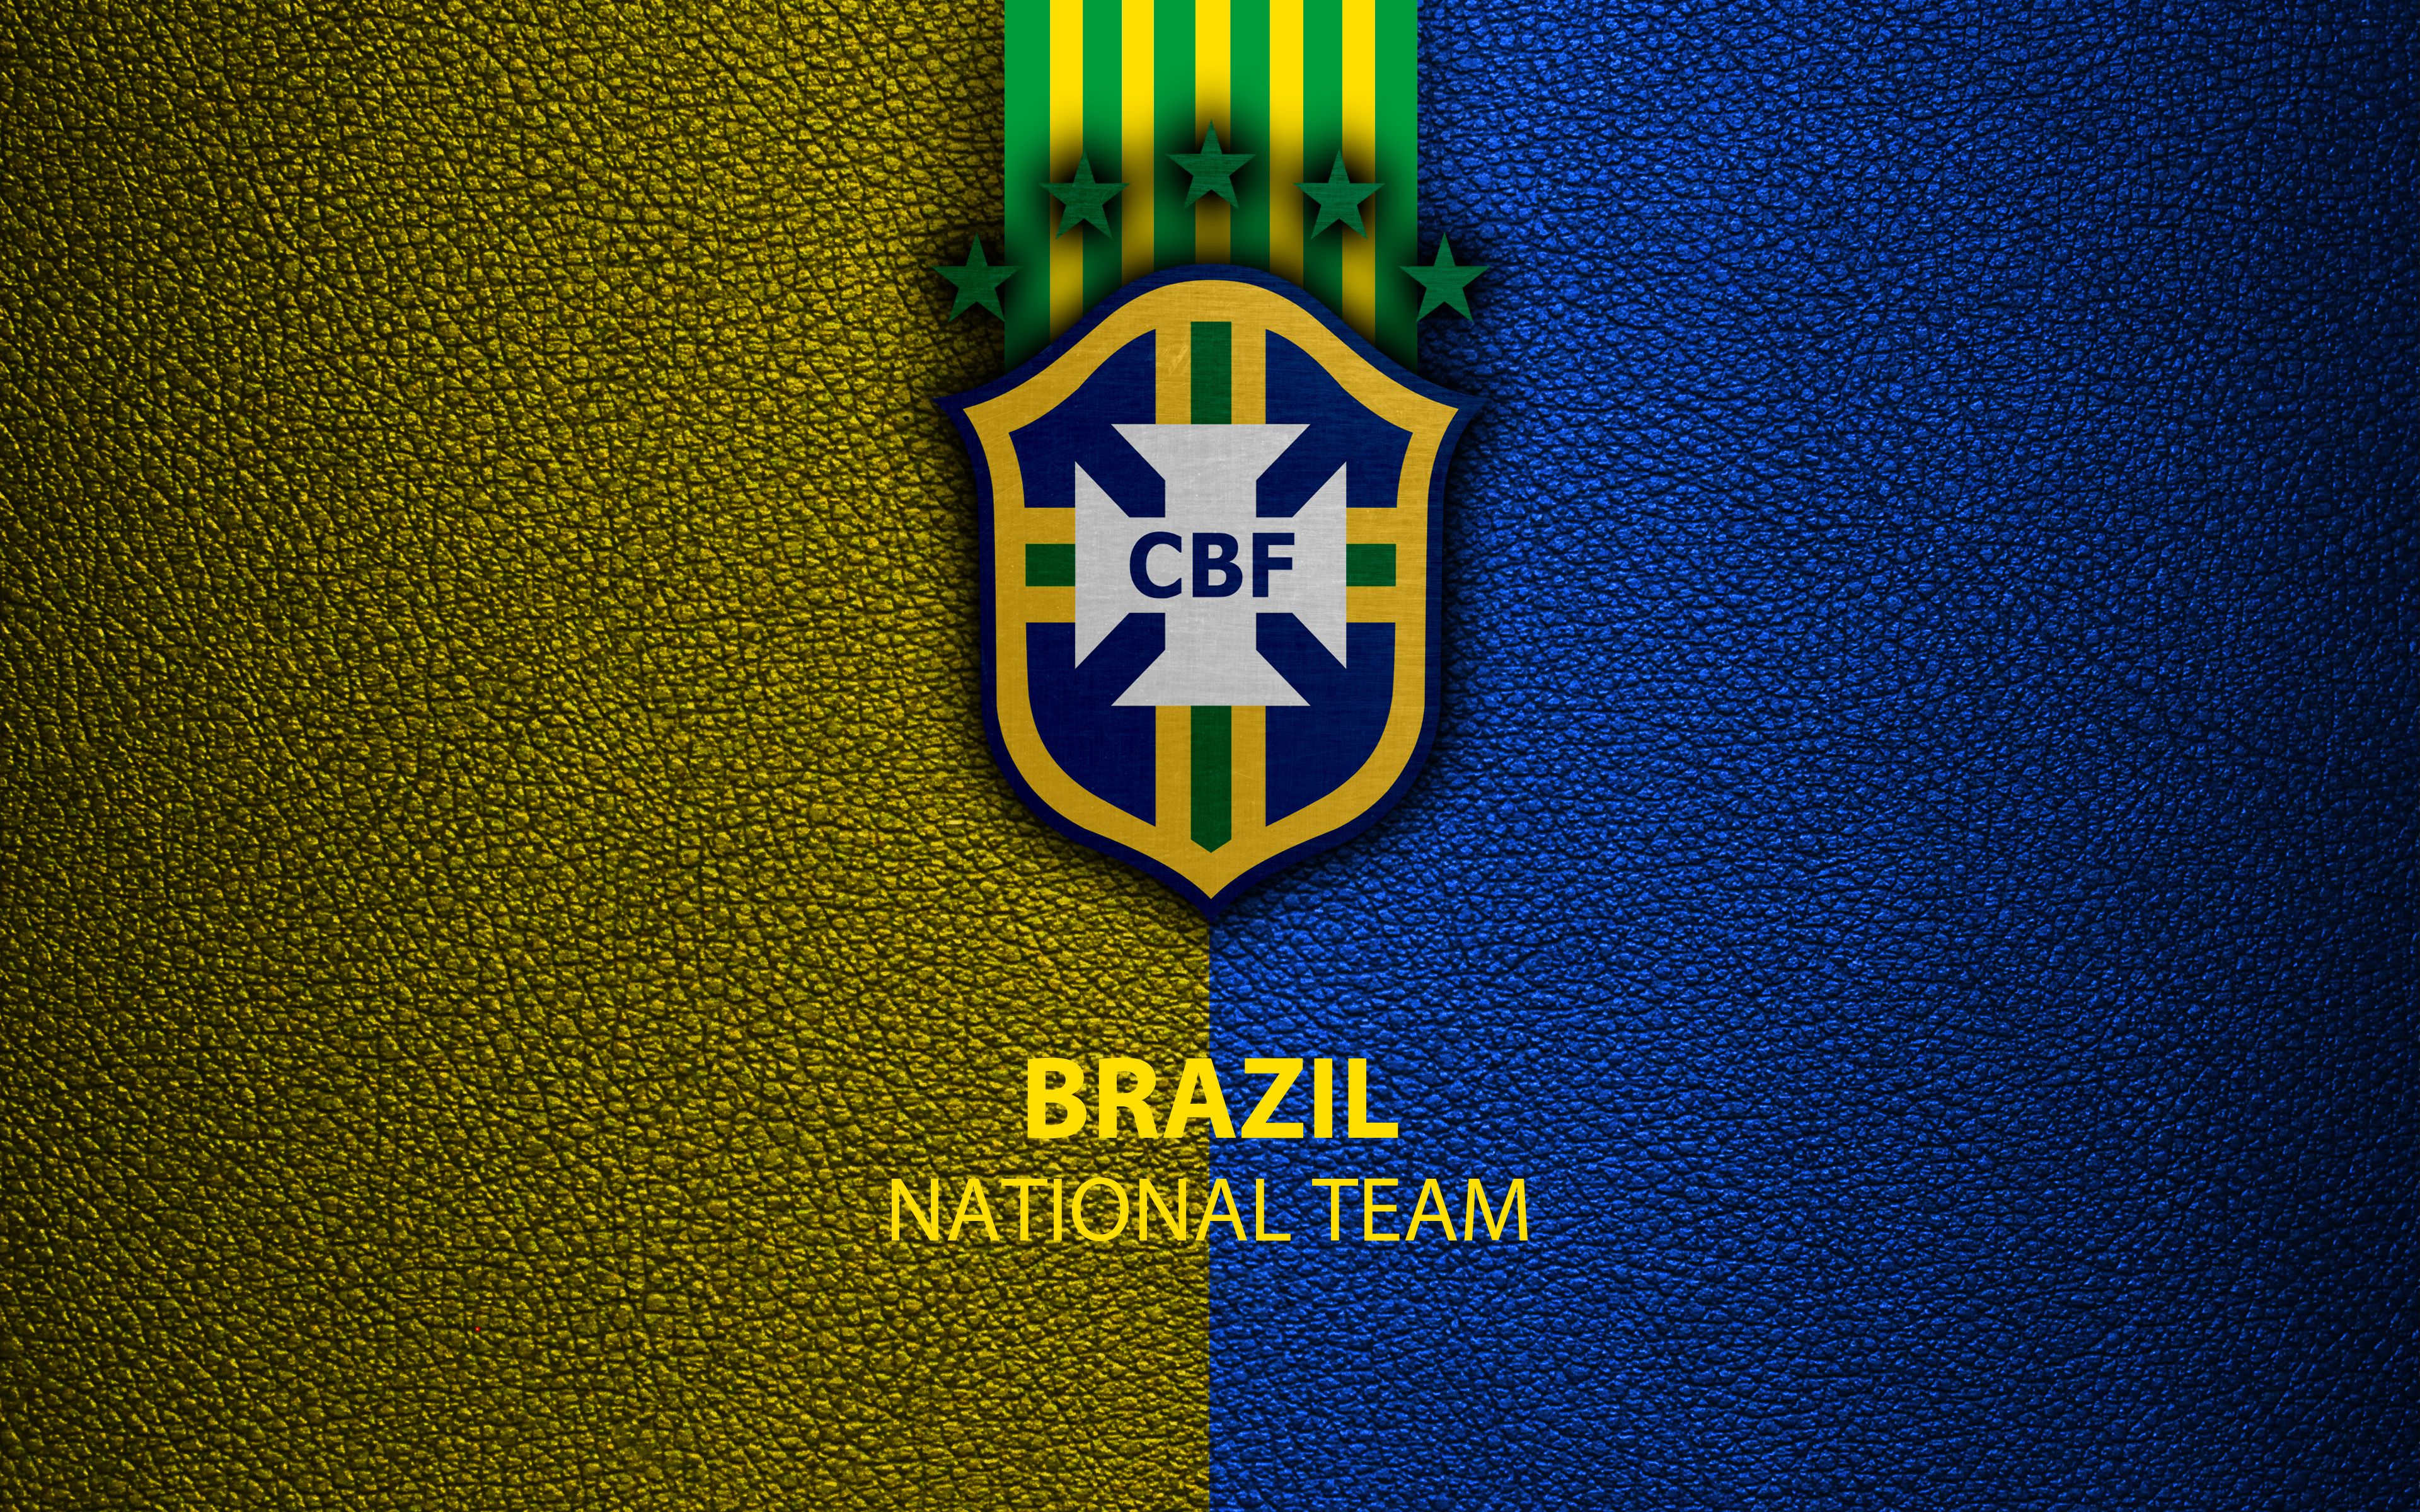 Brazil National Football Team 4k Ultra HD Wallpaper